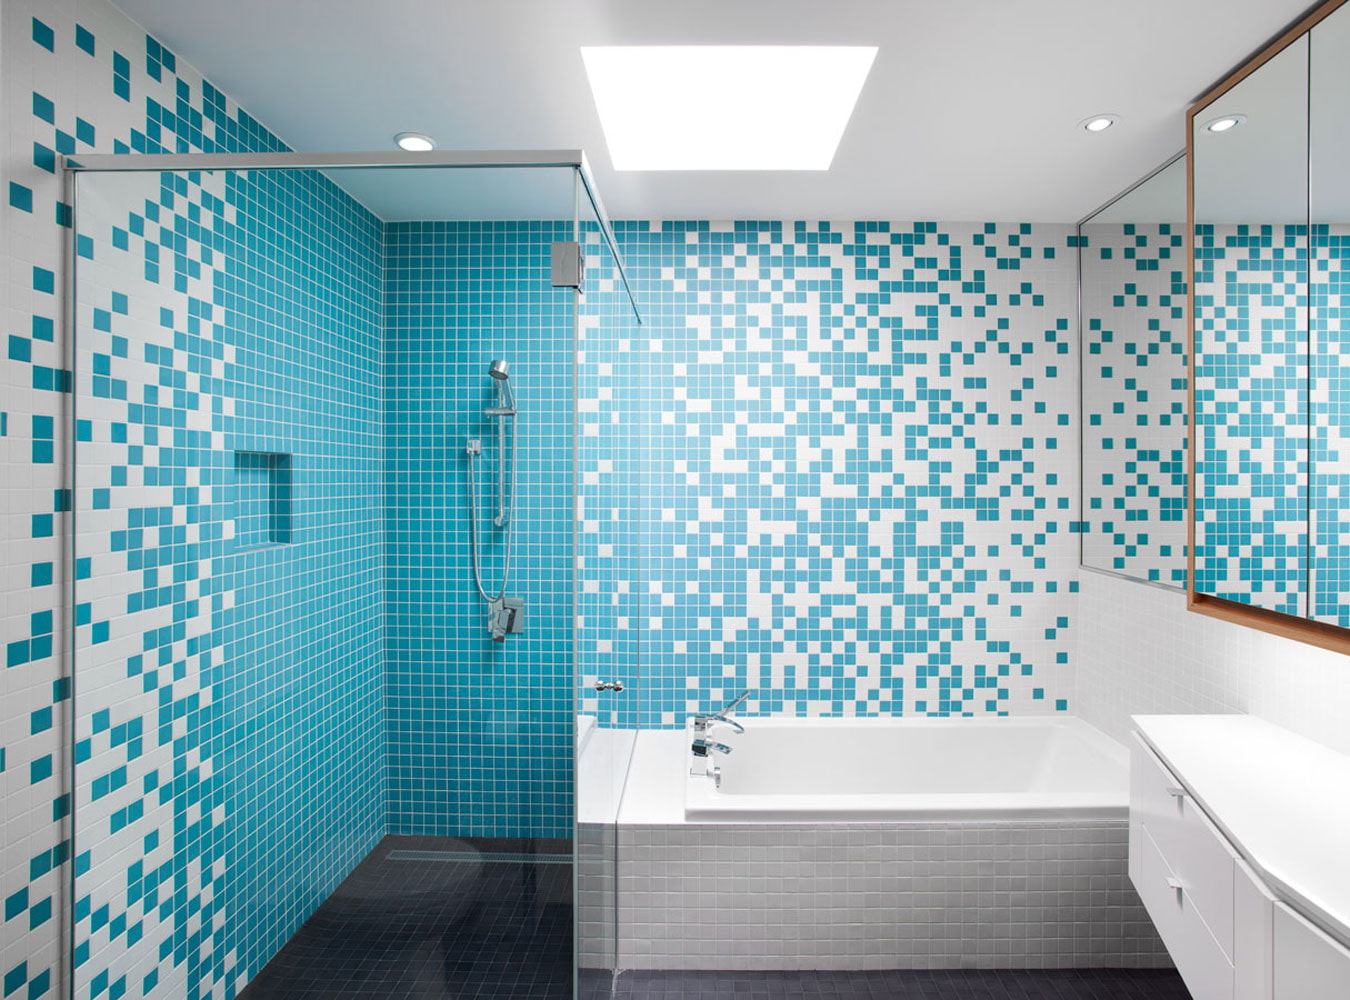 Плитка мозаика в ванной в интерьере фото